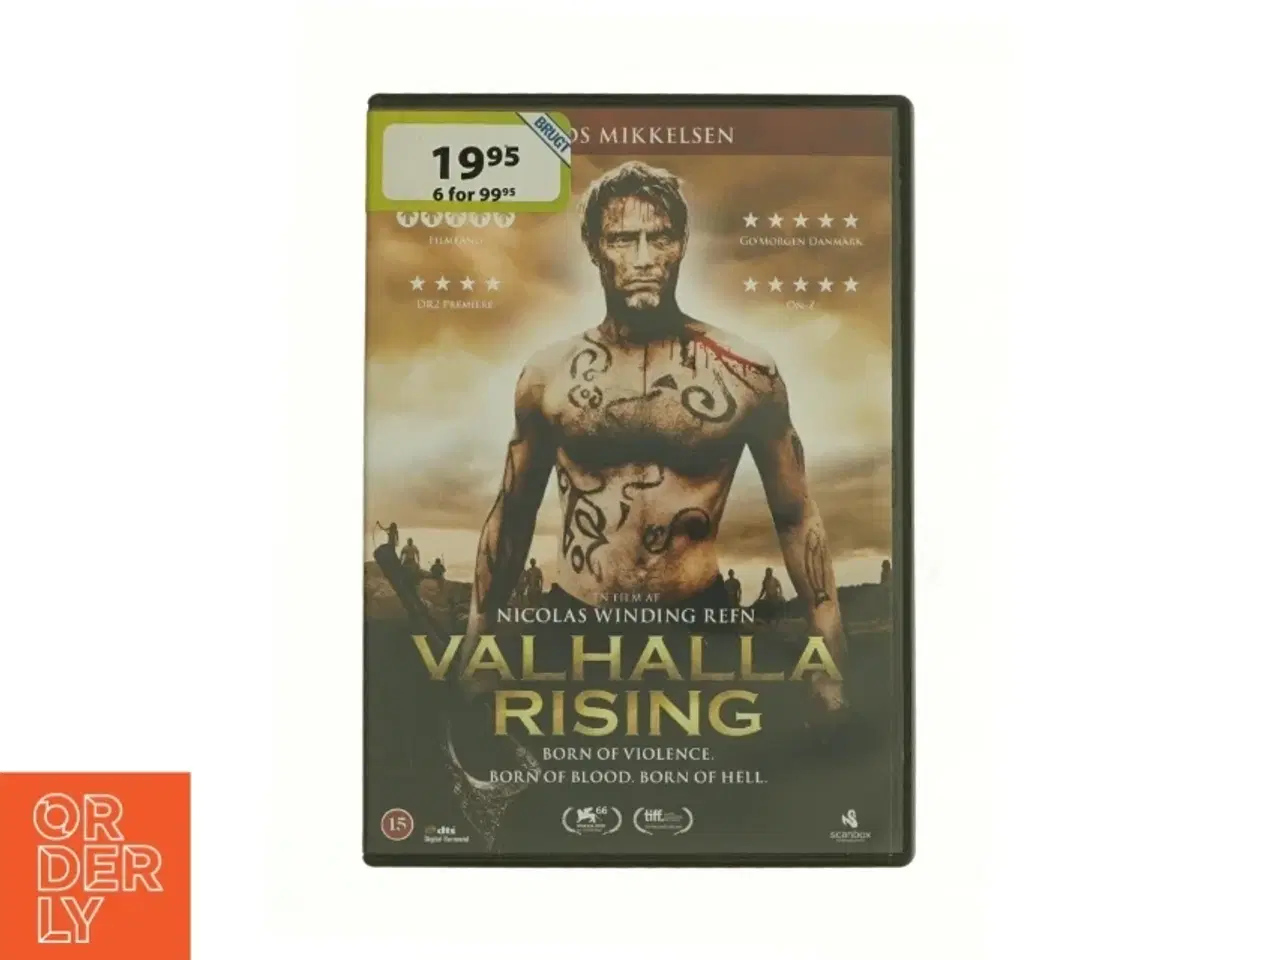 Billede 1 - Valhalla rising fra dvd